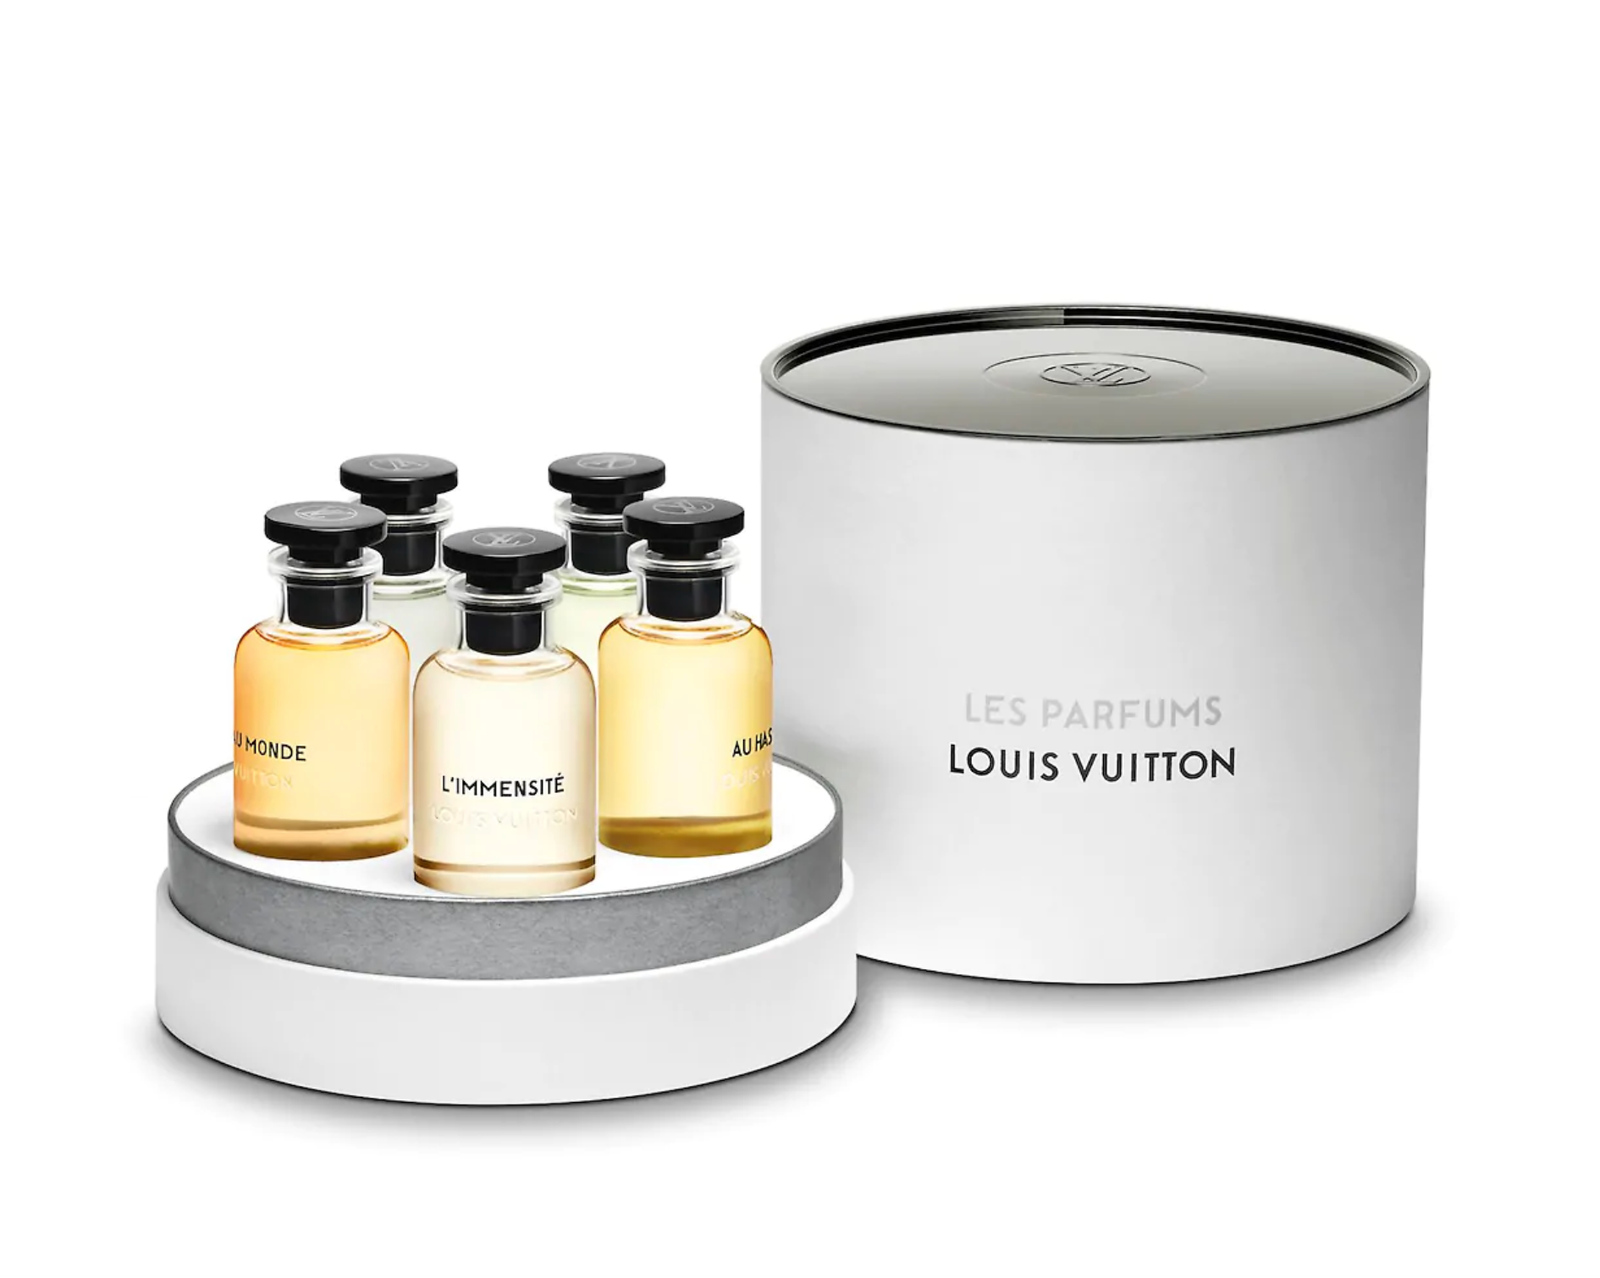 Miniature Set Louis Vuitton.